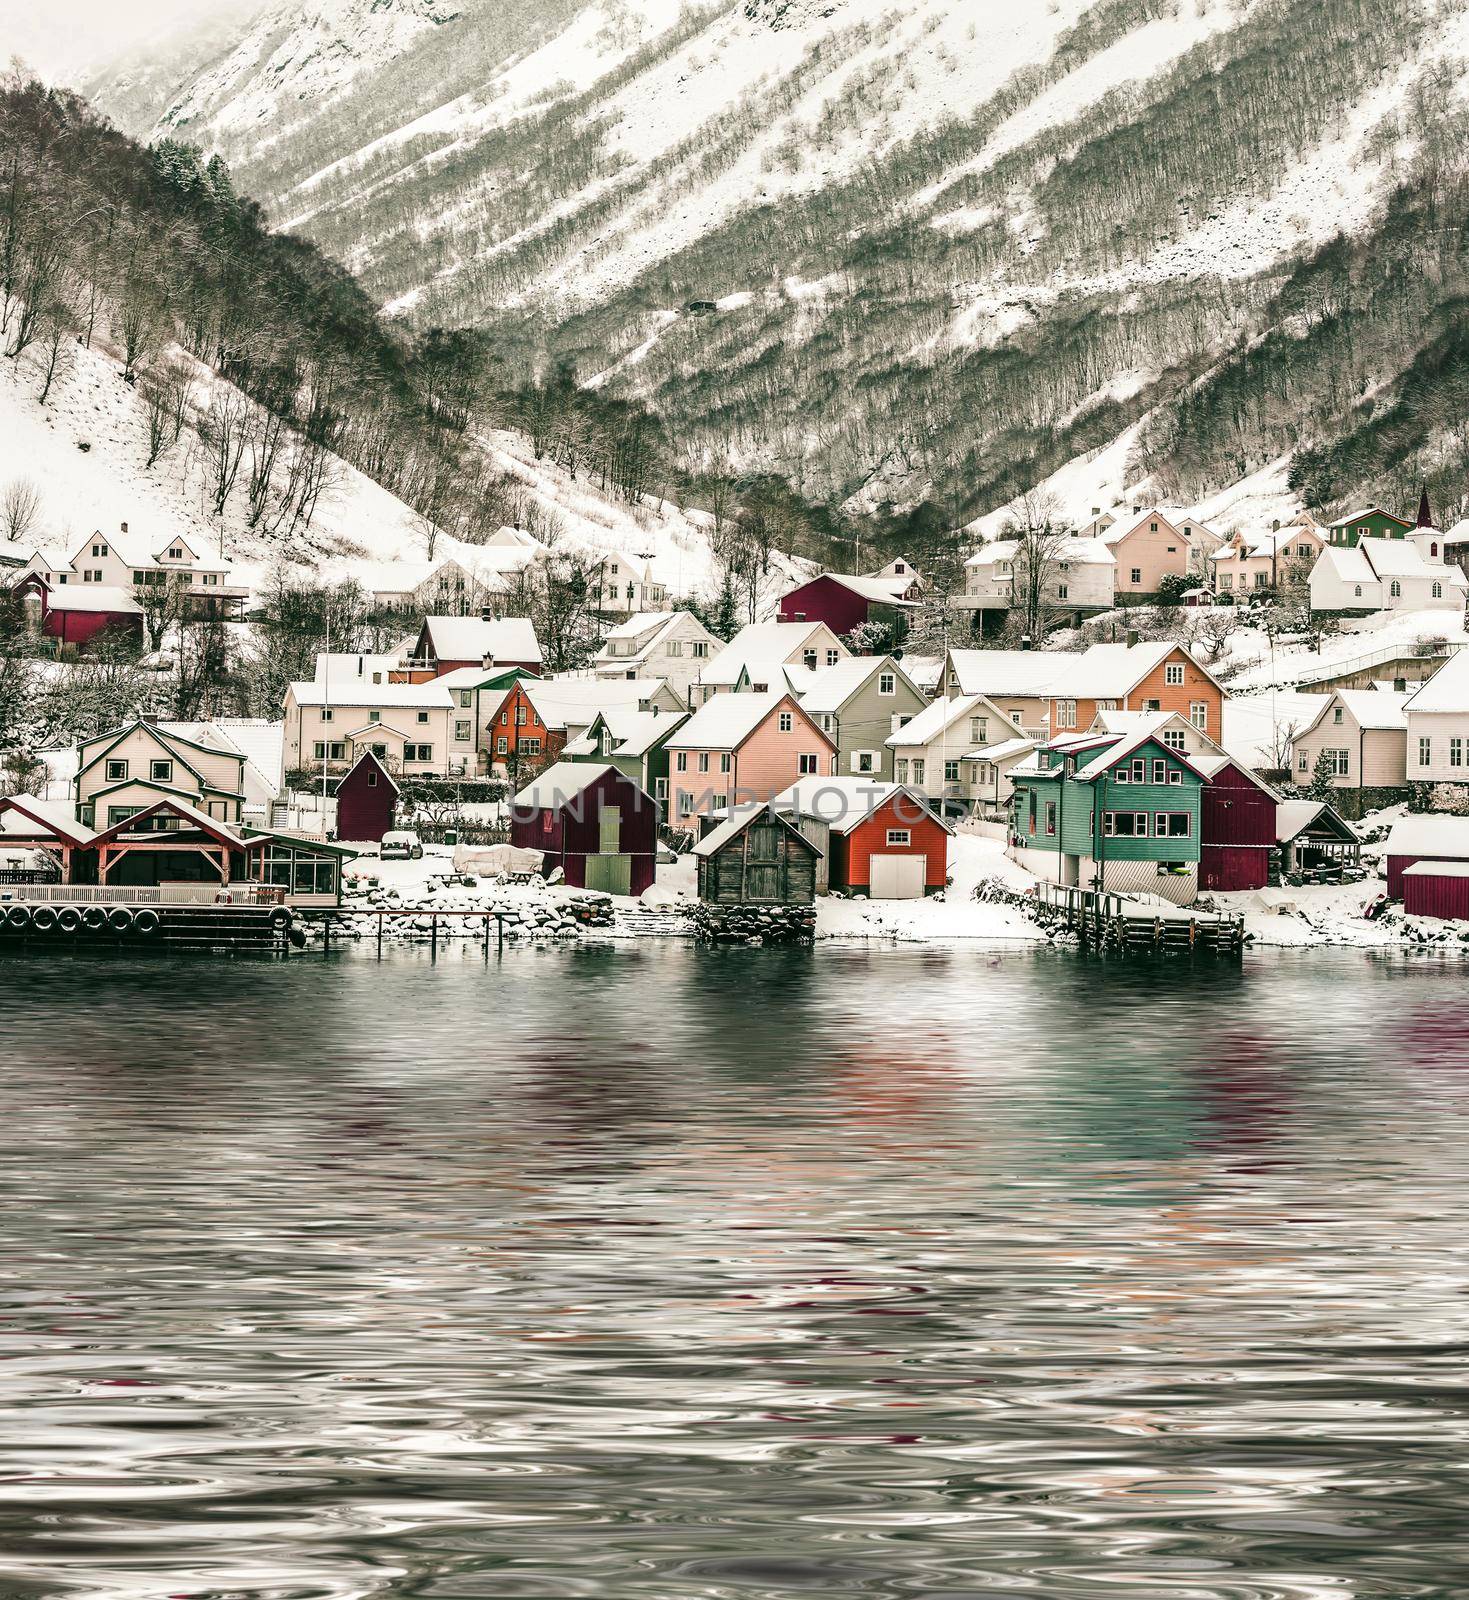 Norwegian Fjords and wooden houses by GekaSkr